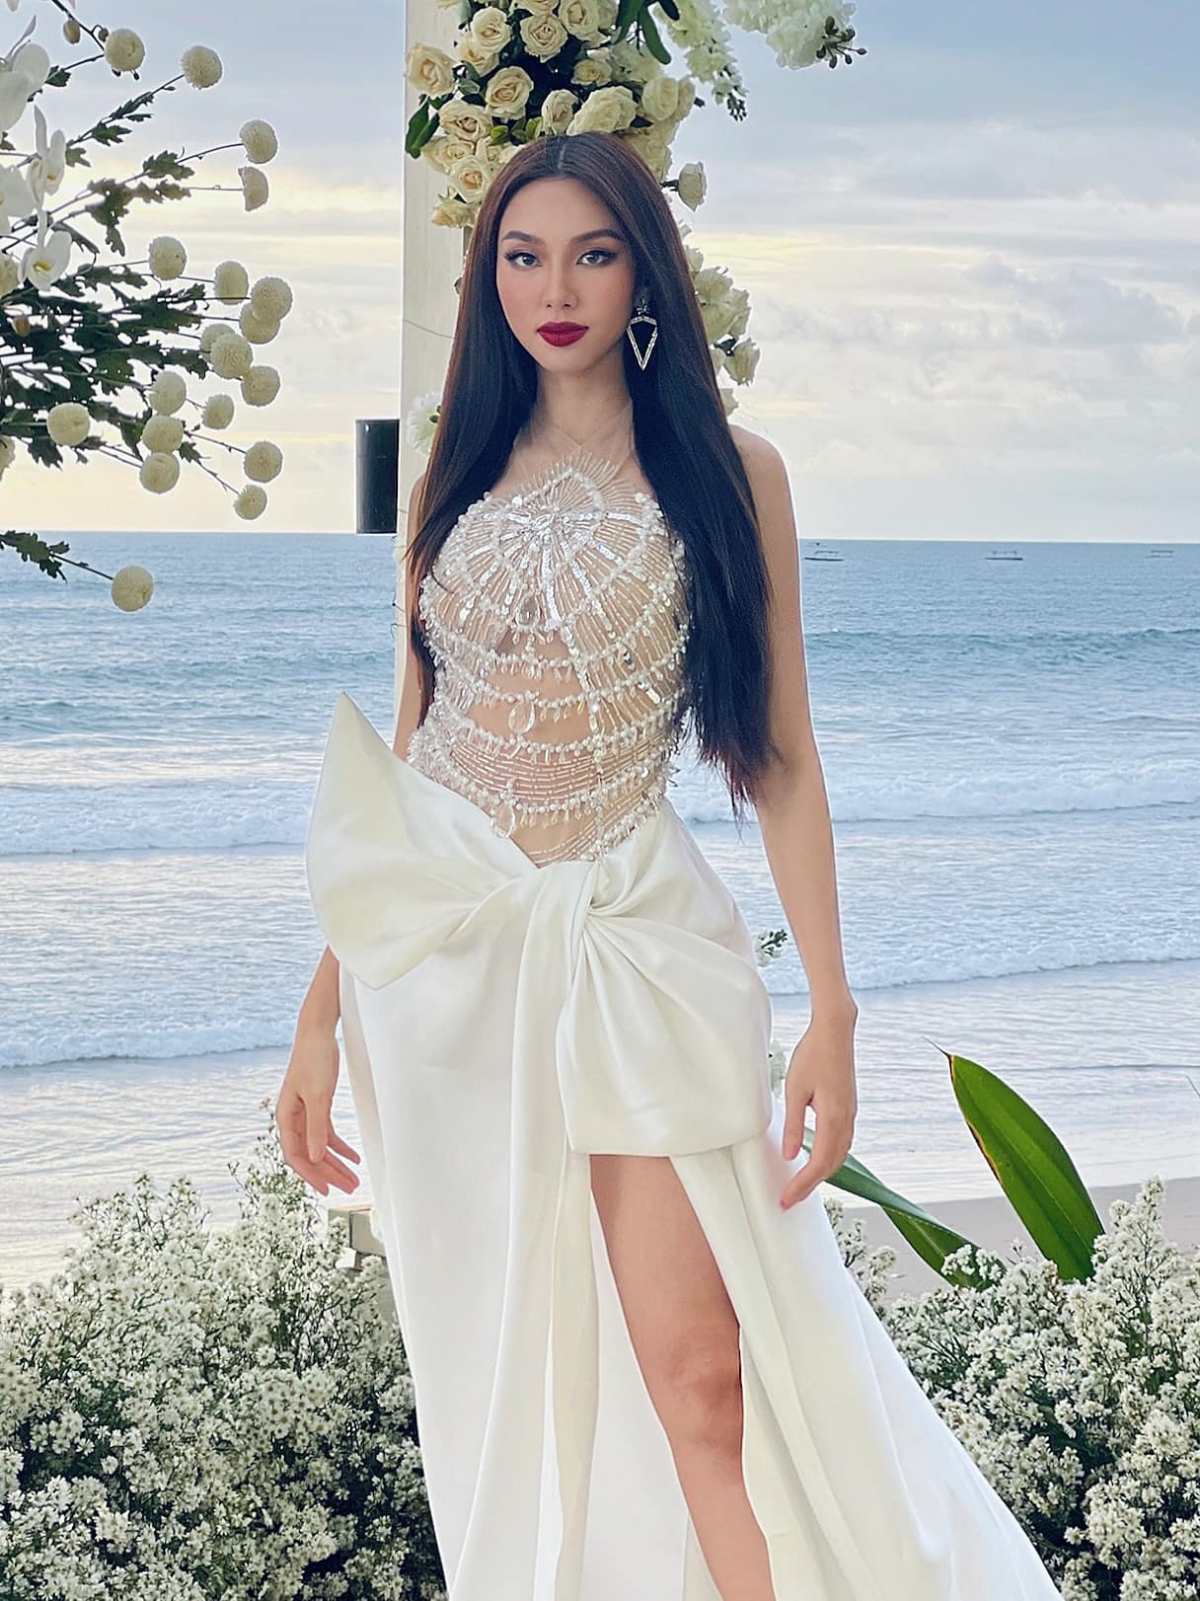 Hoa hậu Thùy Tiên khoe sắc vóc quyến rũ với đầm cut-out nóng bỏng ở Indonesia - Ảnh 4.